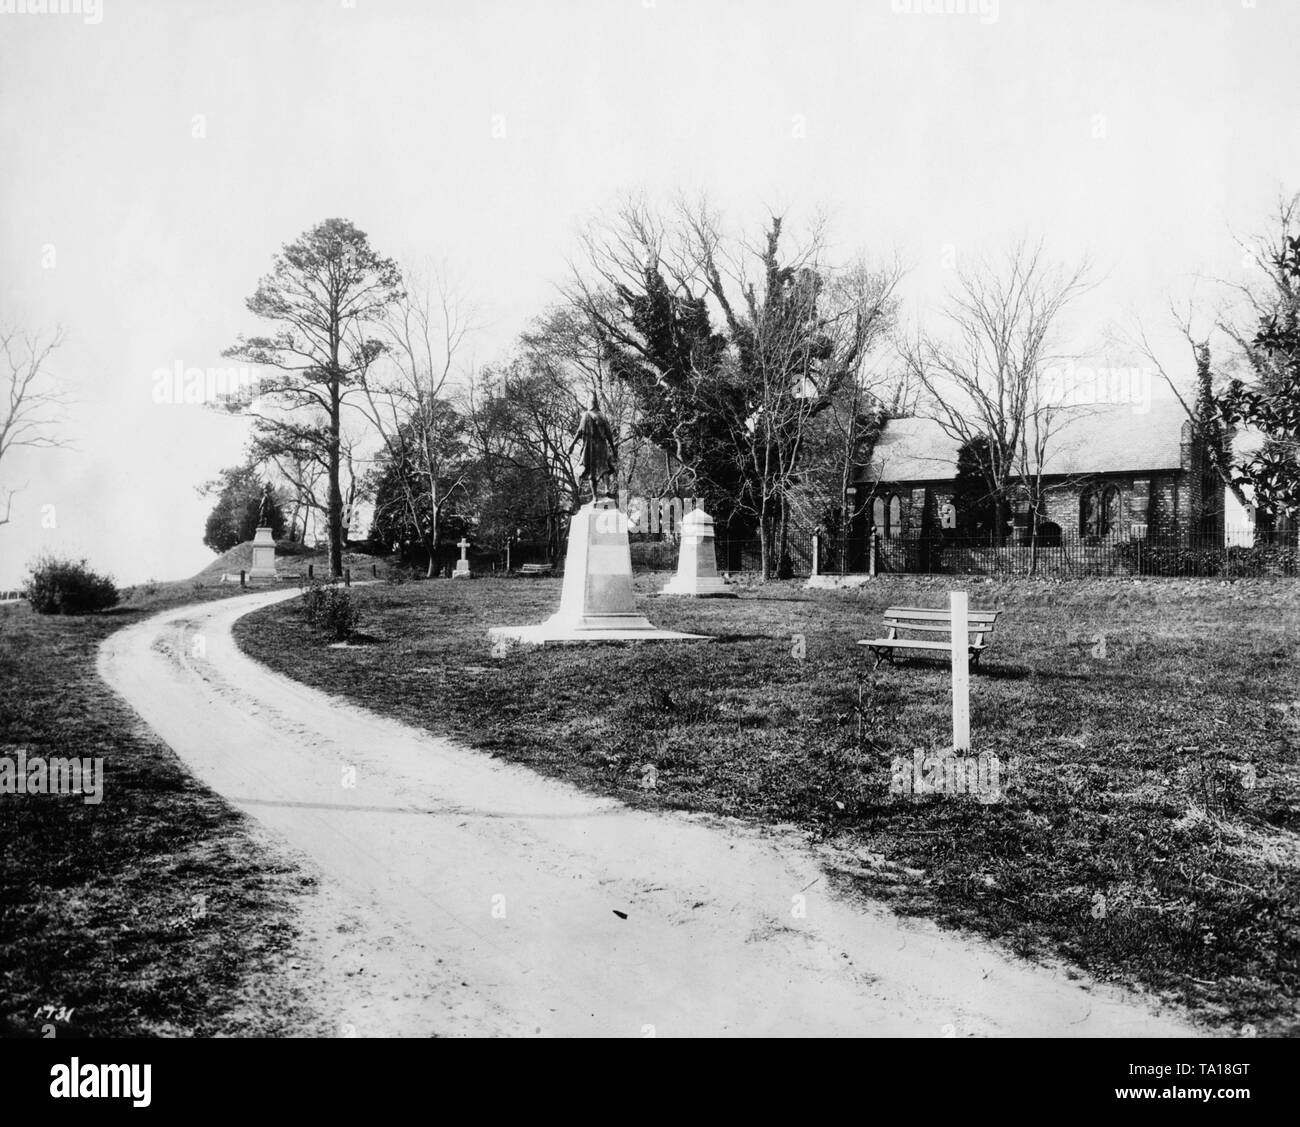 Blick auf die Kirche und die Pocahontas und John Smith Memorial in Jamestown, Virginia. Jamestown war die erste dauerhafte englische Siedlung in Nordamerika. Stockfoto